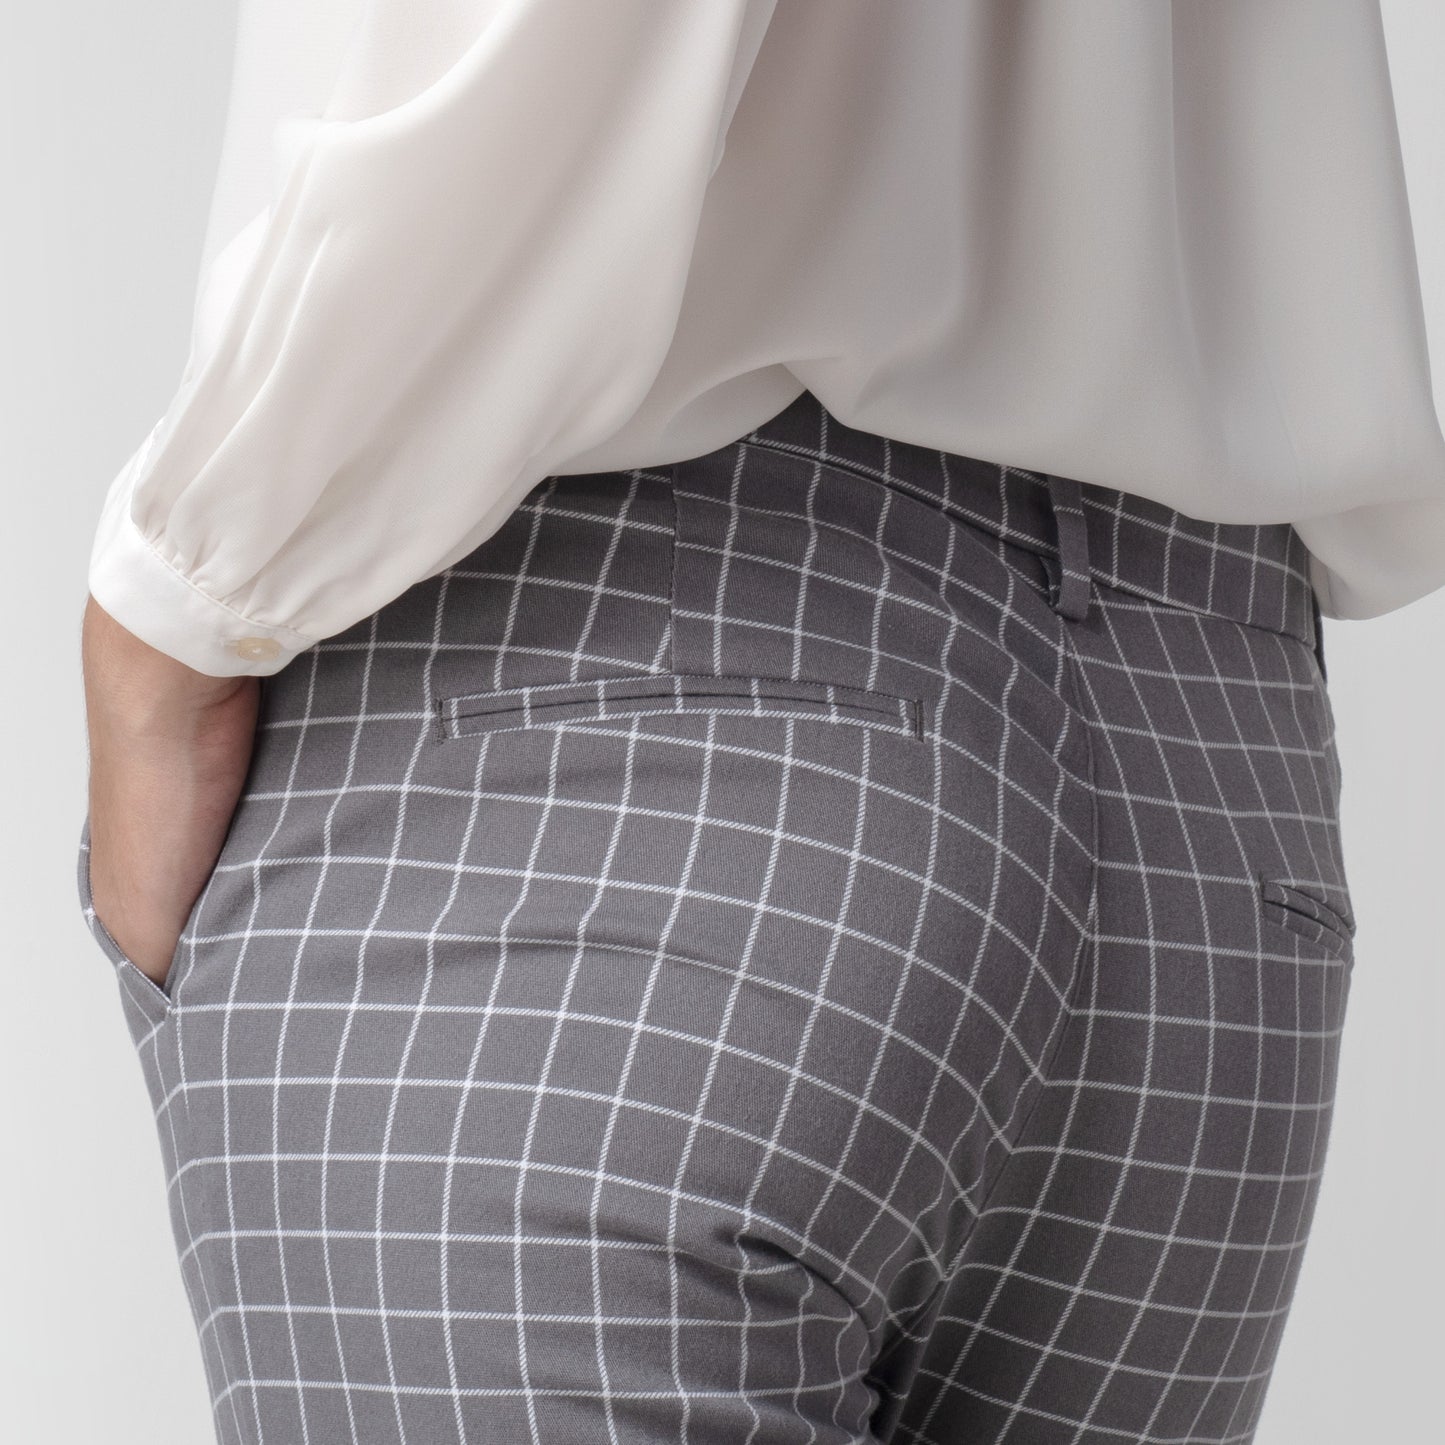 Celana Tartan Wanita "Narae" Plaid Pants Kotak Kotak Grey 260-32682